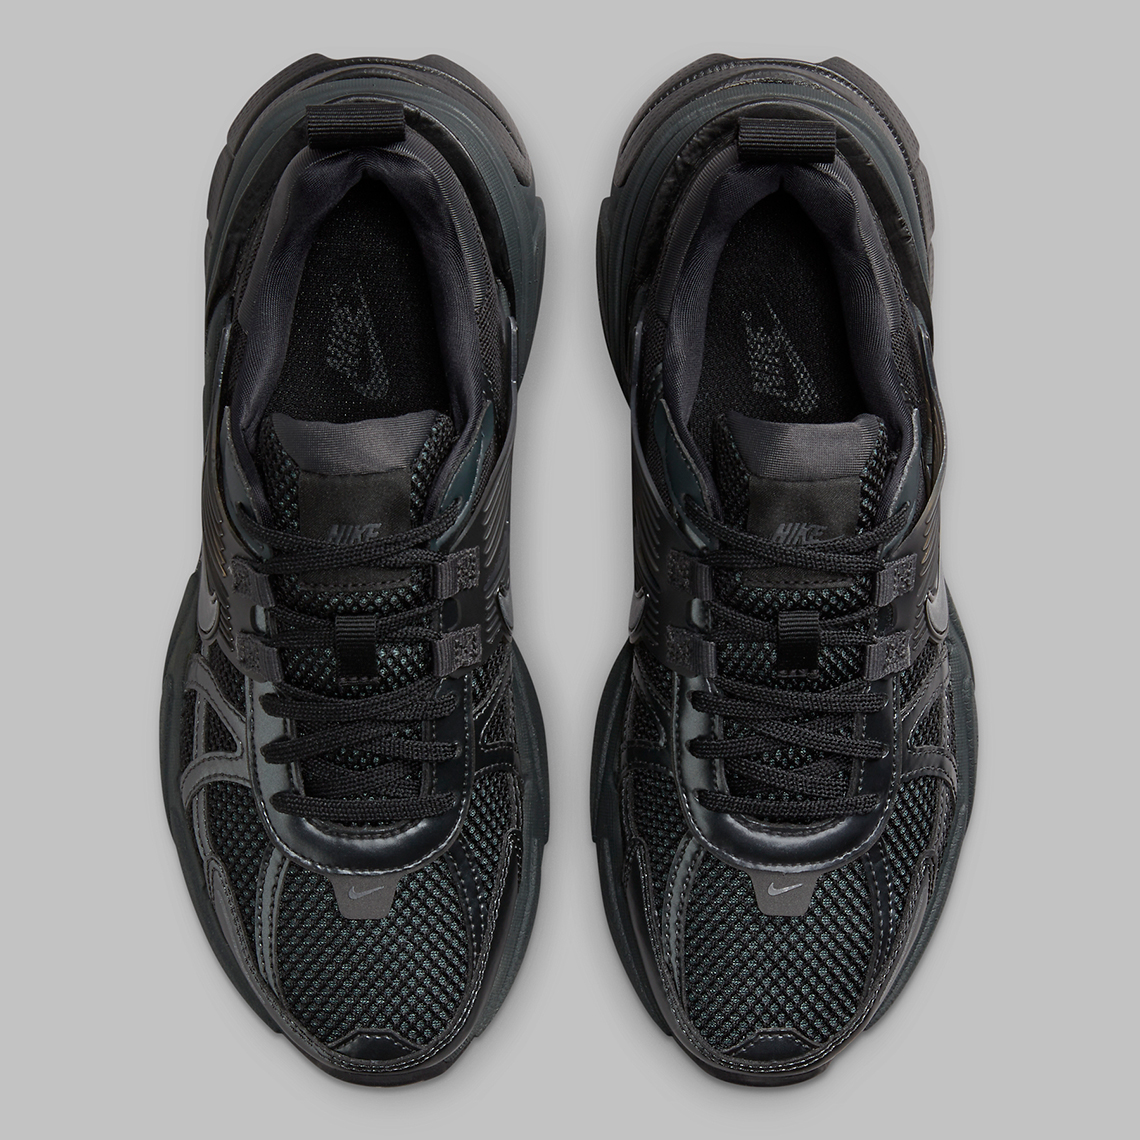 Nike Runtekk Triple Black Fd0736 001 Release Date 6